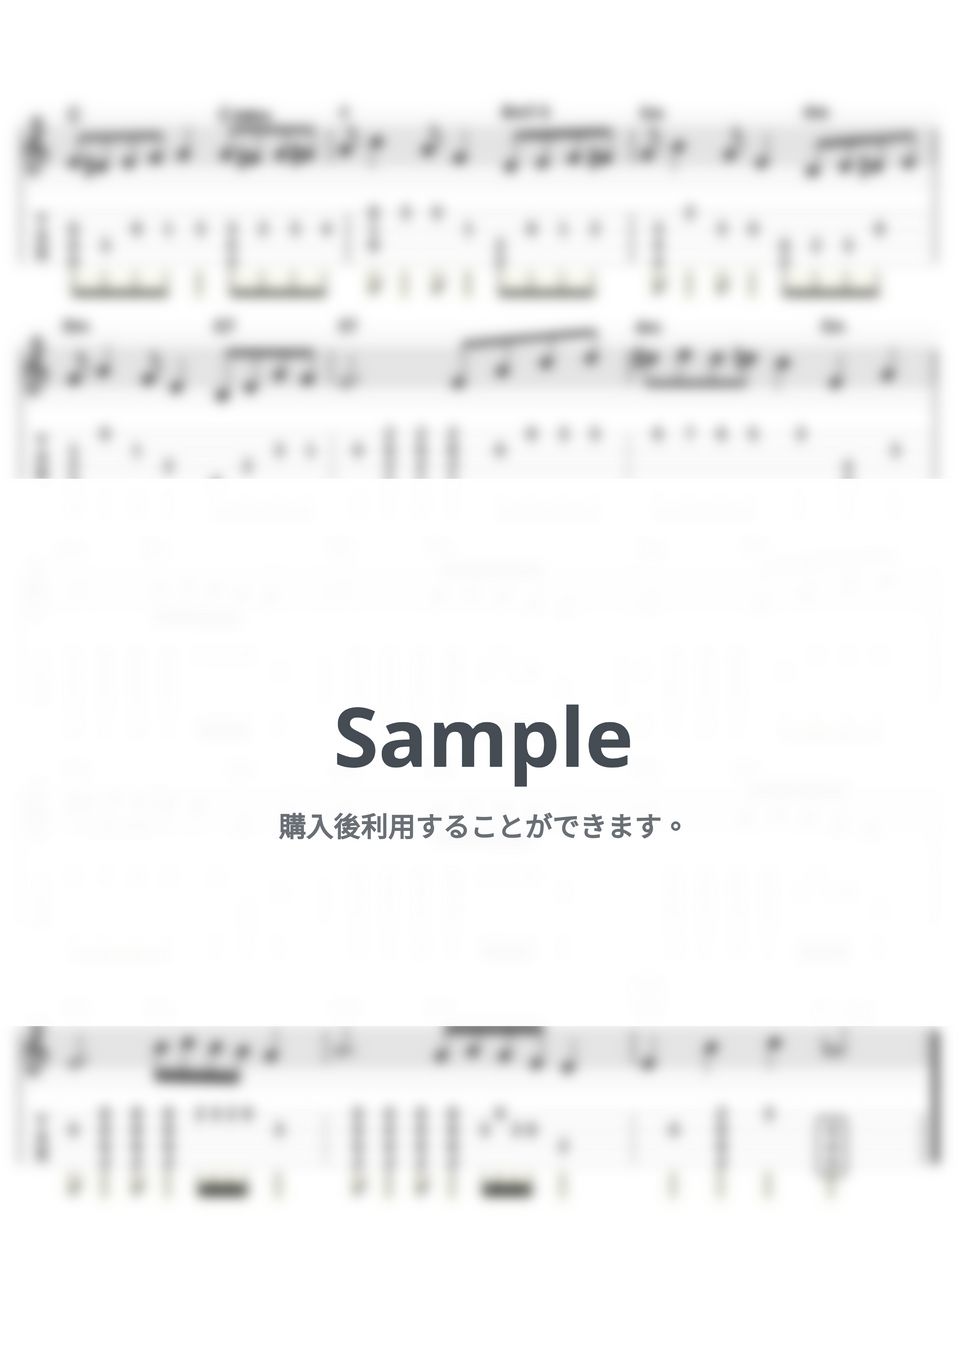 ポール・デスモント - テイク・ファイブ (ｳｸﾚﾚｿﾛ / Low-G / 中級) by ukulelepapa